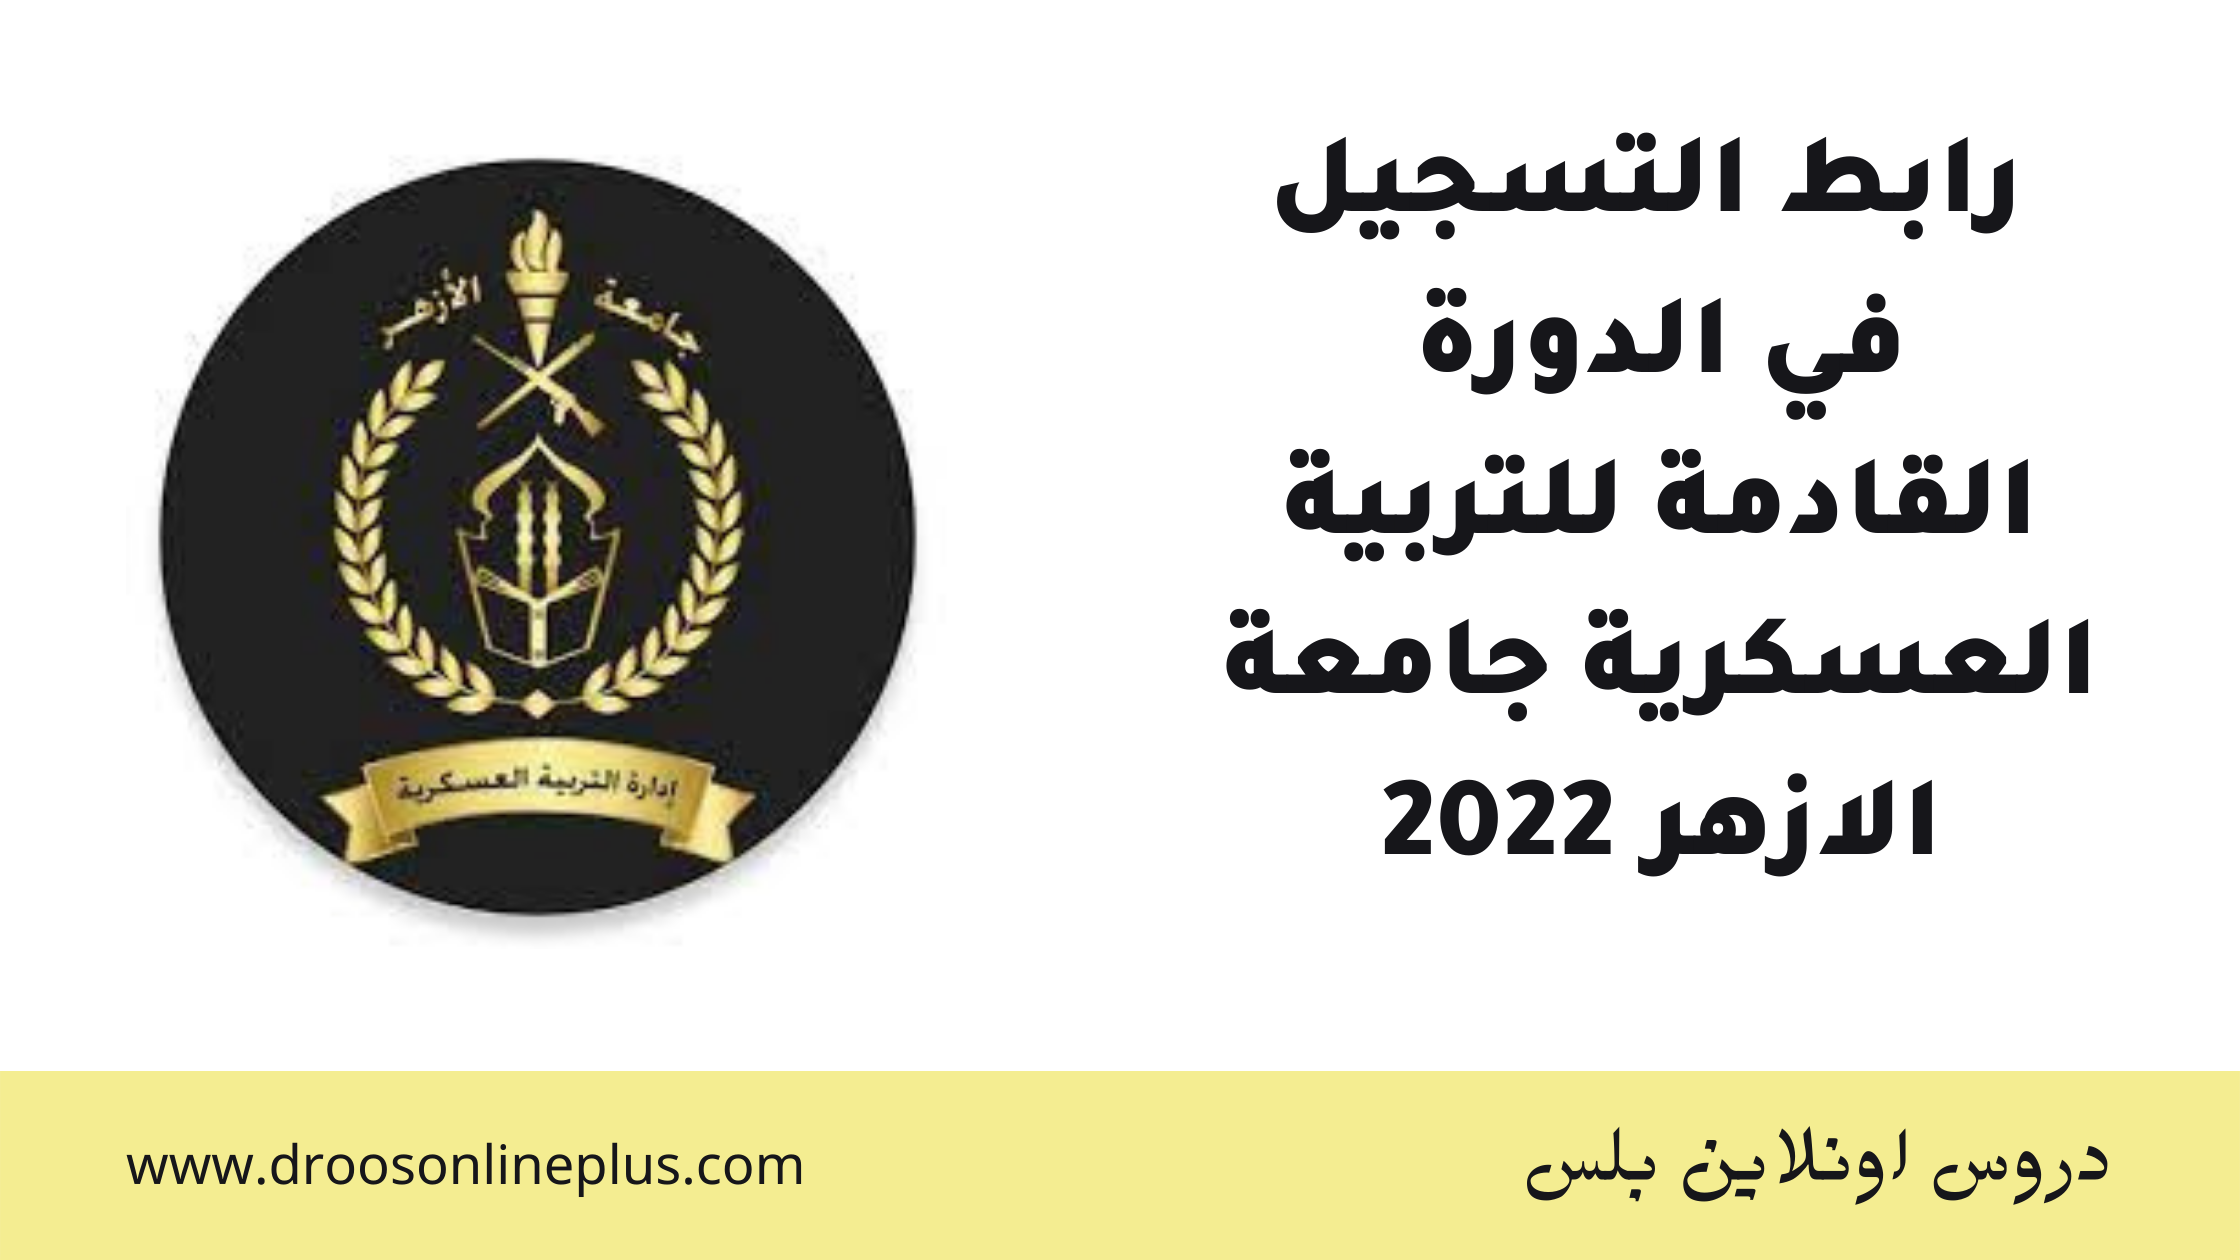 رابط التسجيل في الدورة القادمة للتربية العسكرية جامعة الازهر 2022